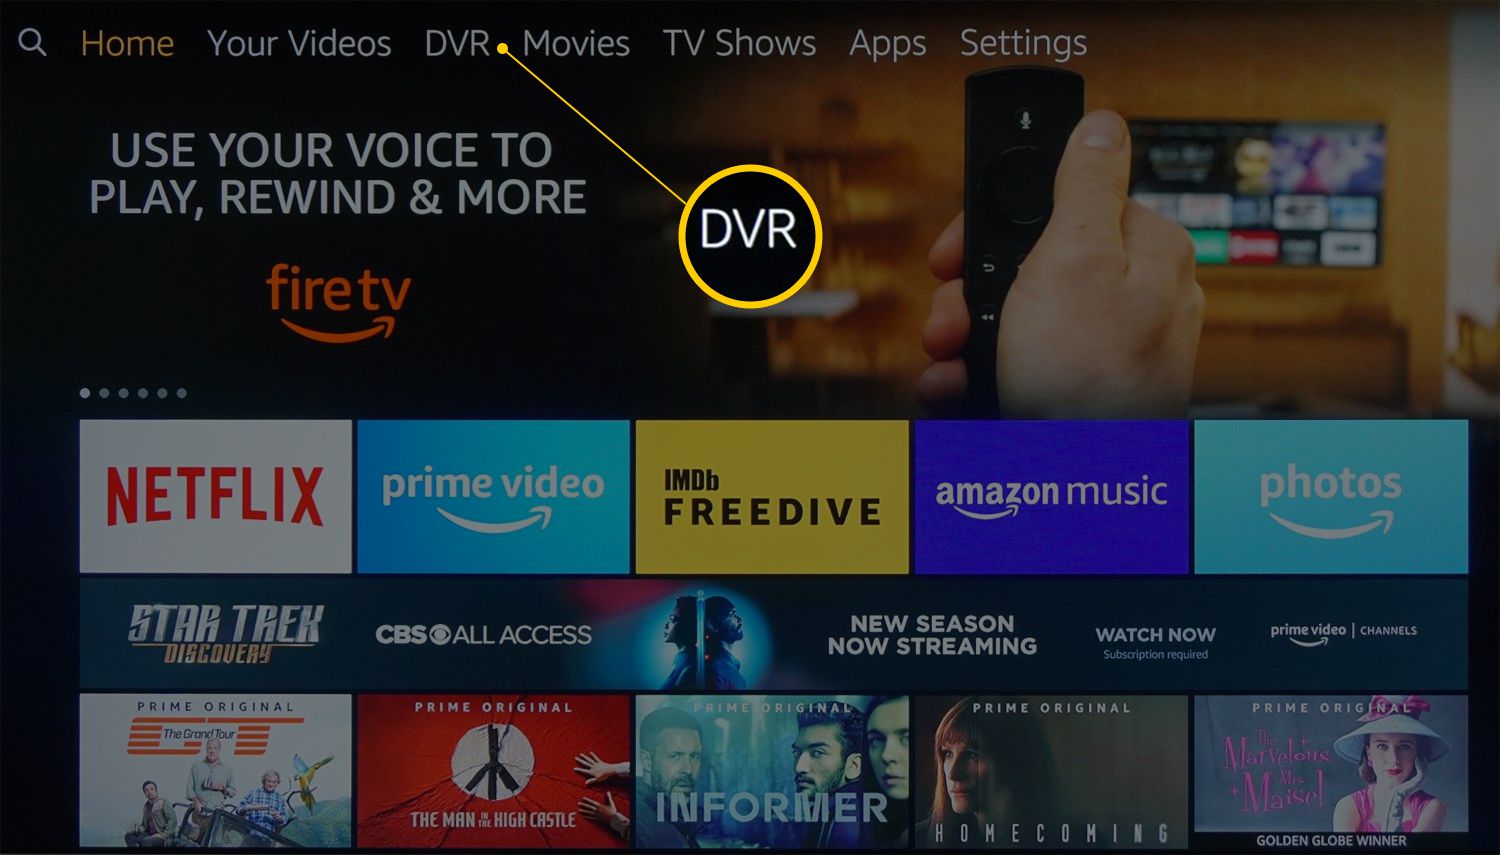 Domovská obrazovka Fire TV s přepracovanou kategorií DVR